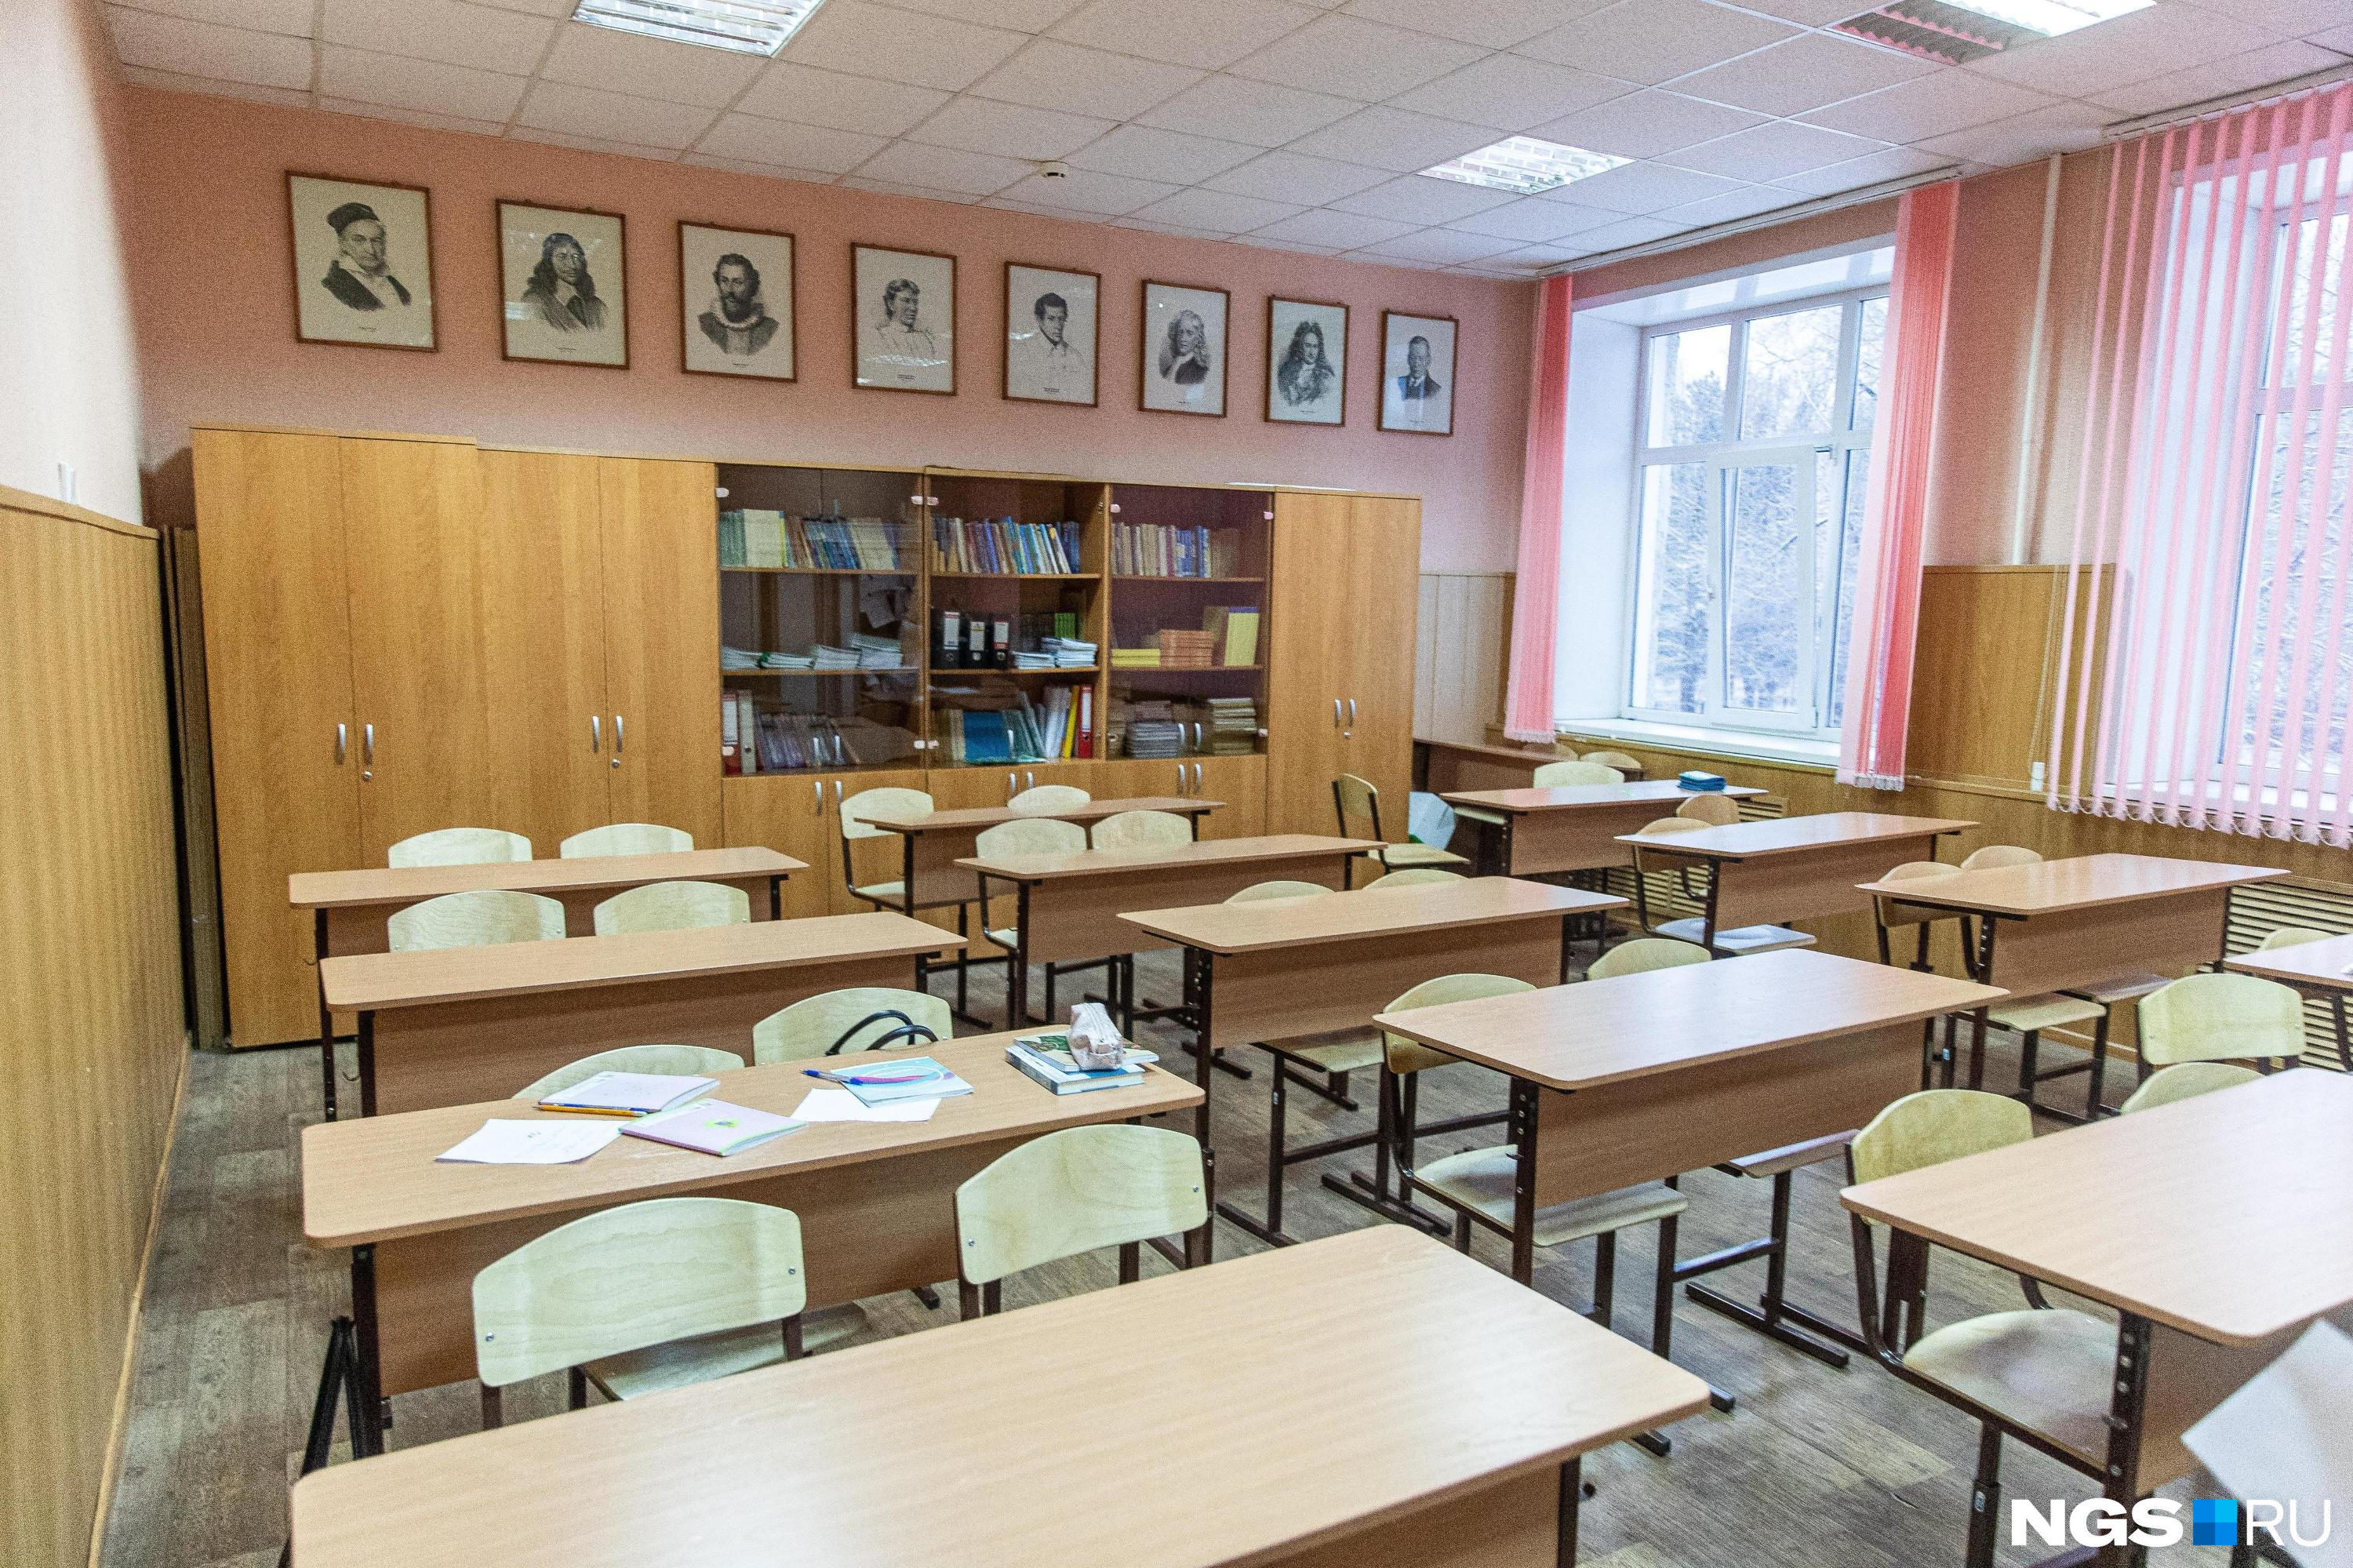 Учителя жалуются на сбор денег для ремонта школы в Чите